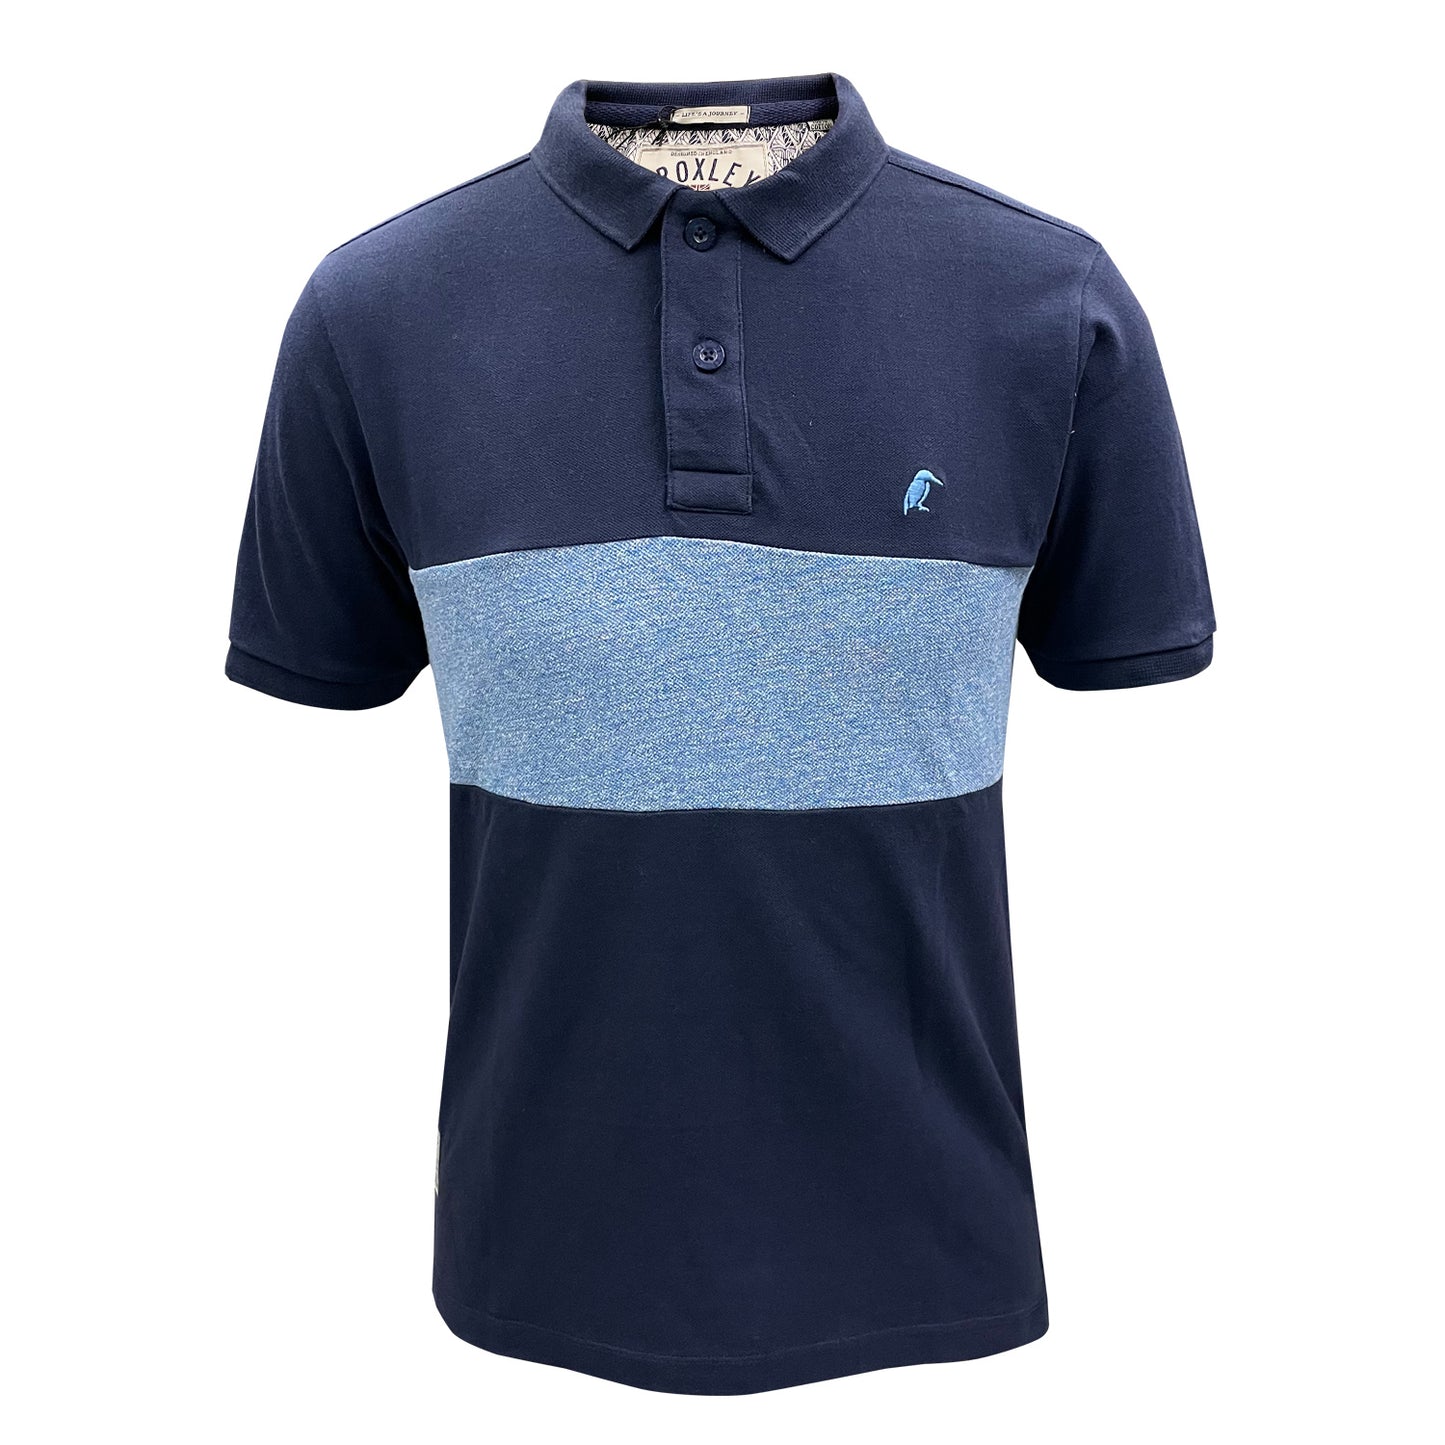 Croxley - Porter Polo Shirt